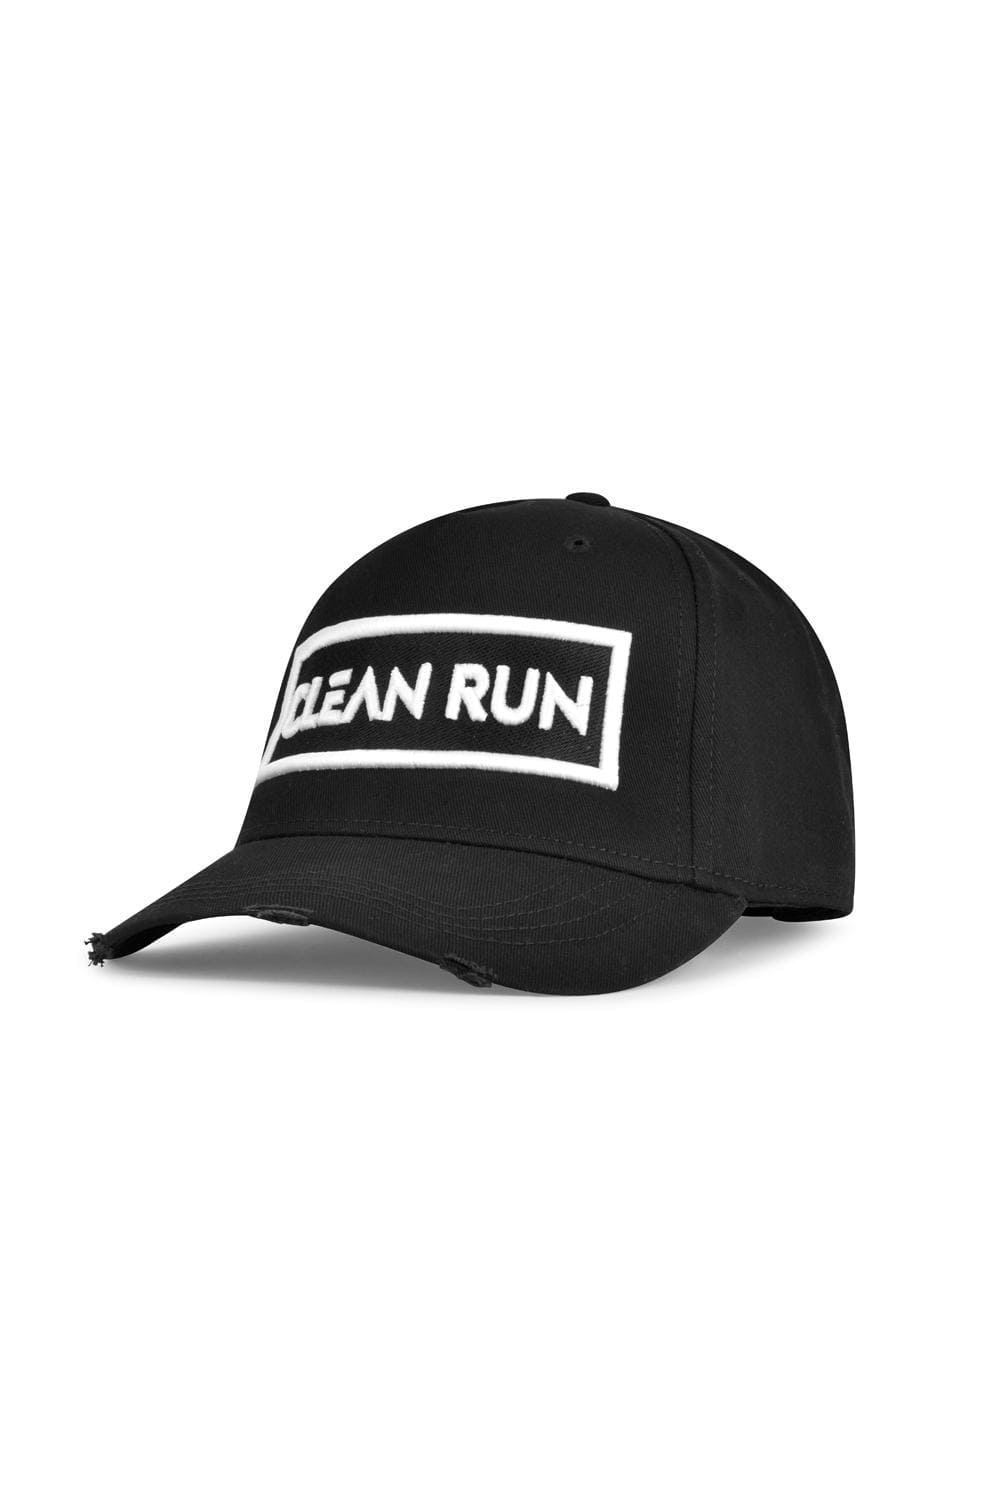 CLEAN RUN -  BLACK CAP